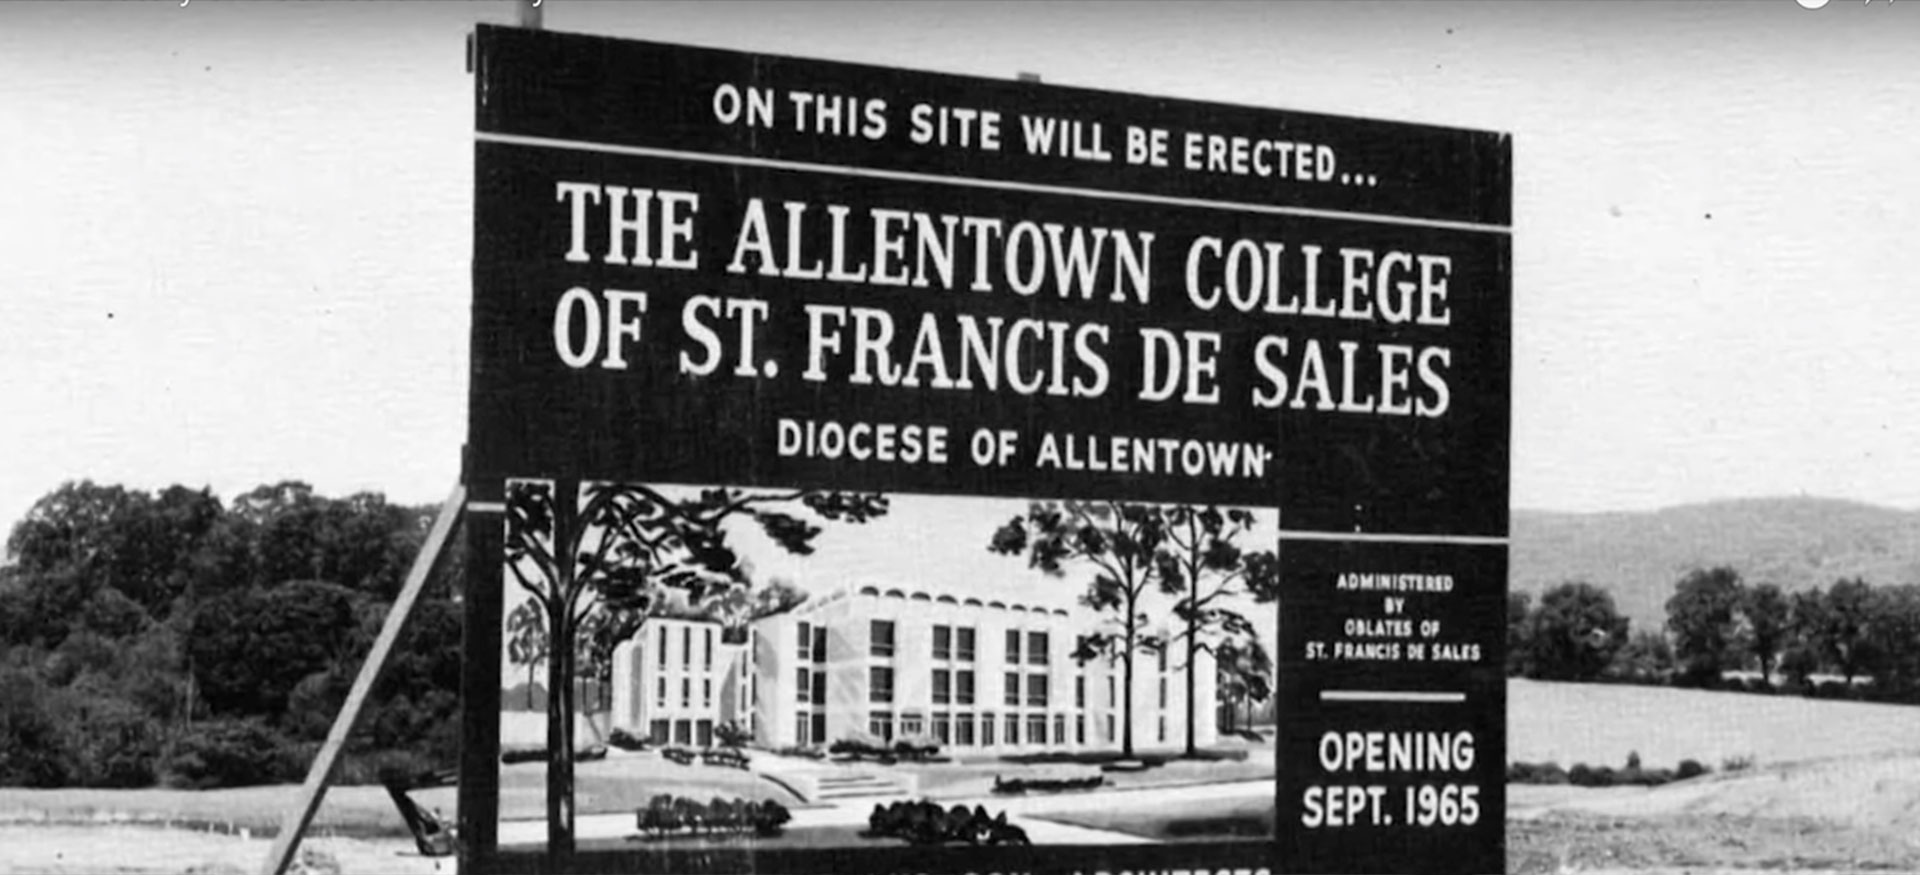 Future Site of Allentown College St. Francis de Sales